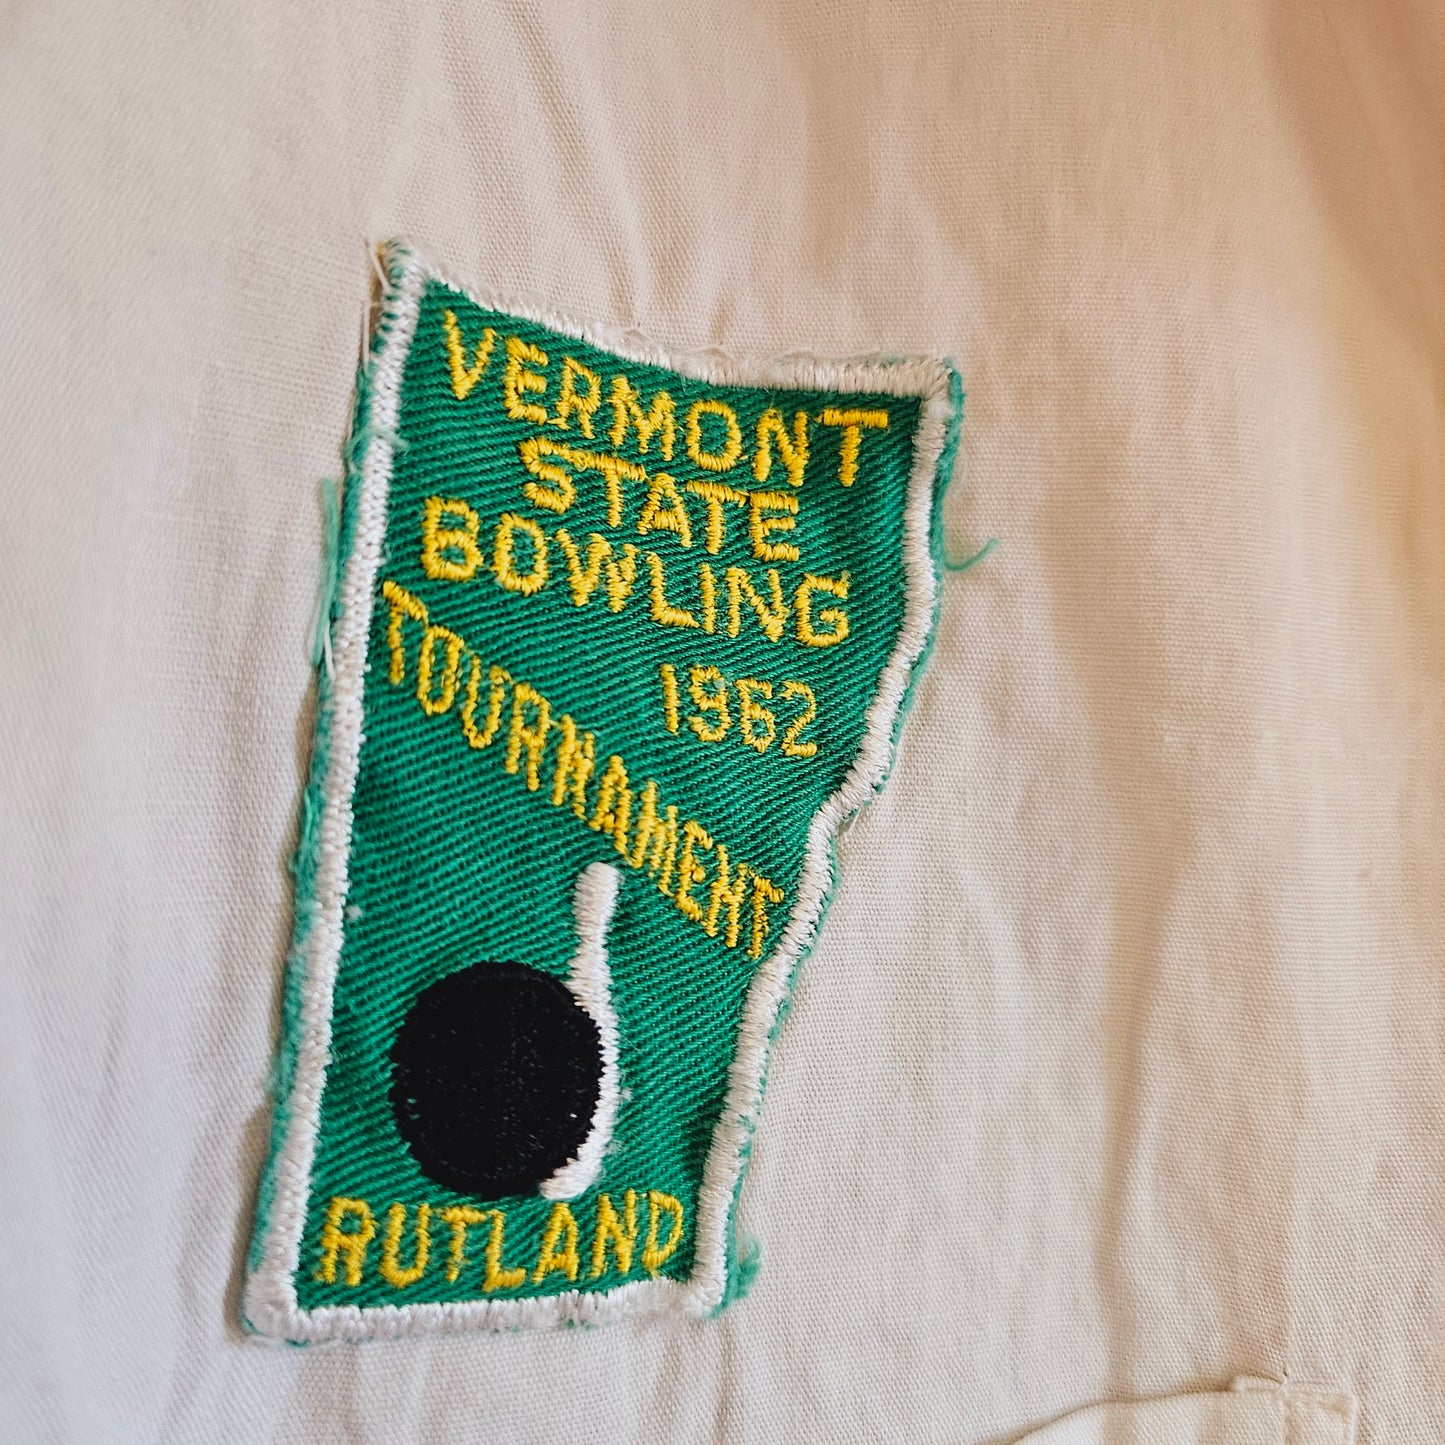 Paul's 1950s/1960s Bowling League Shirt